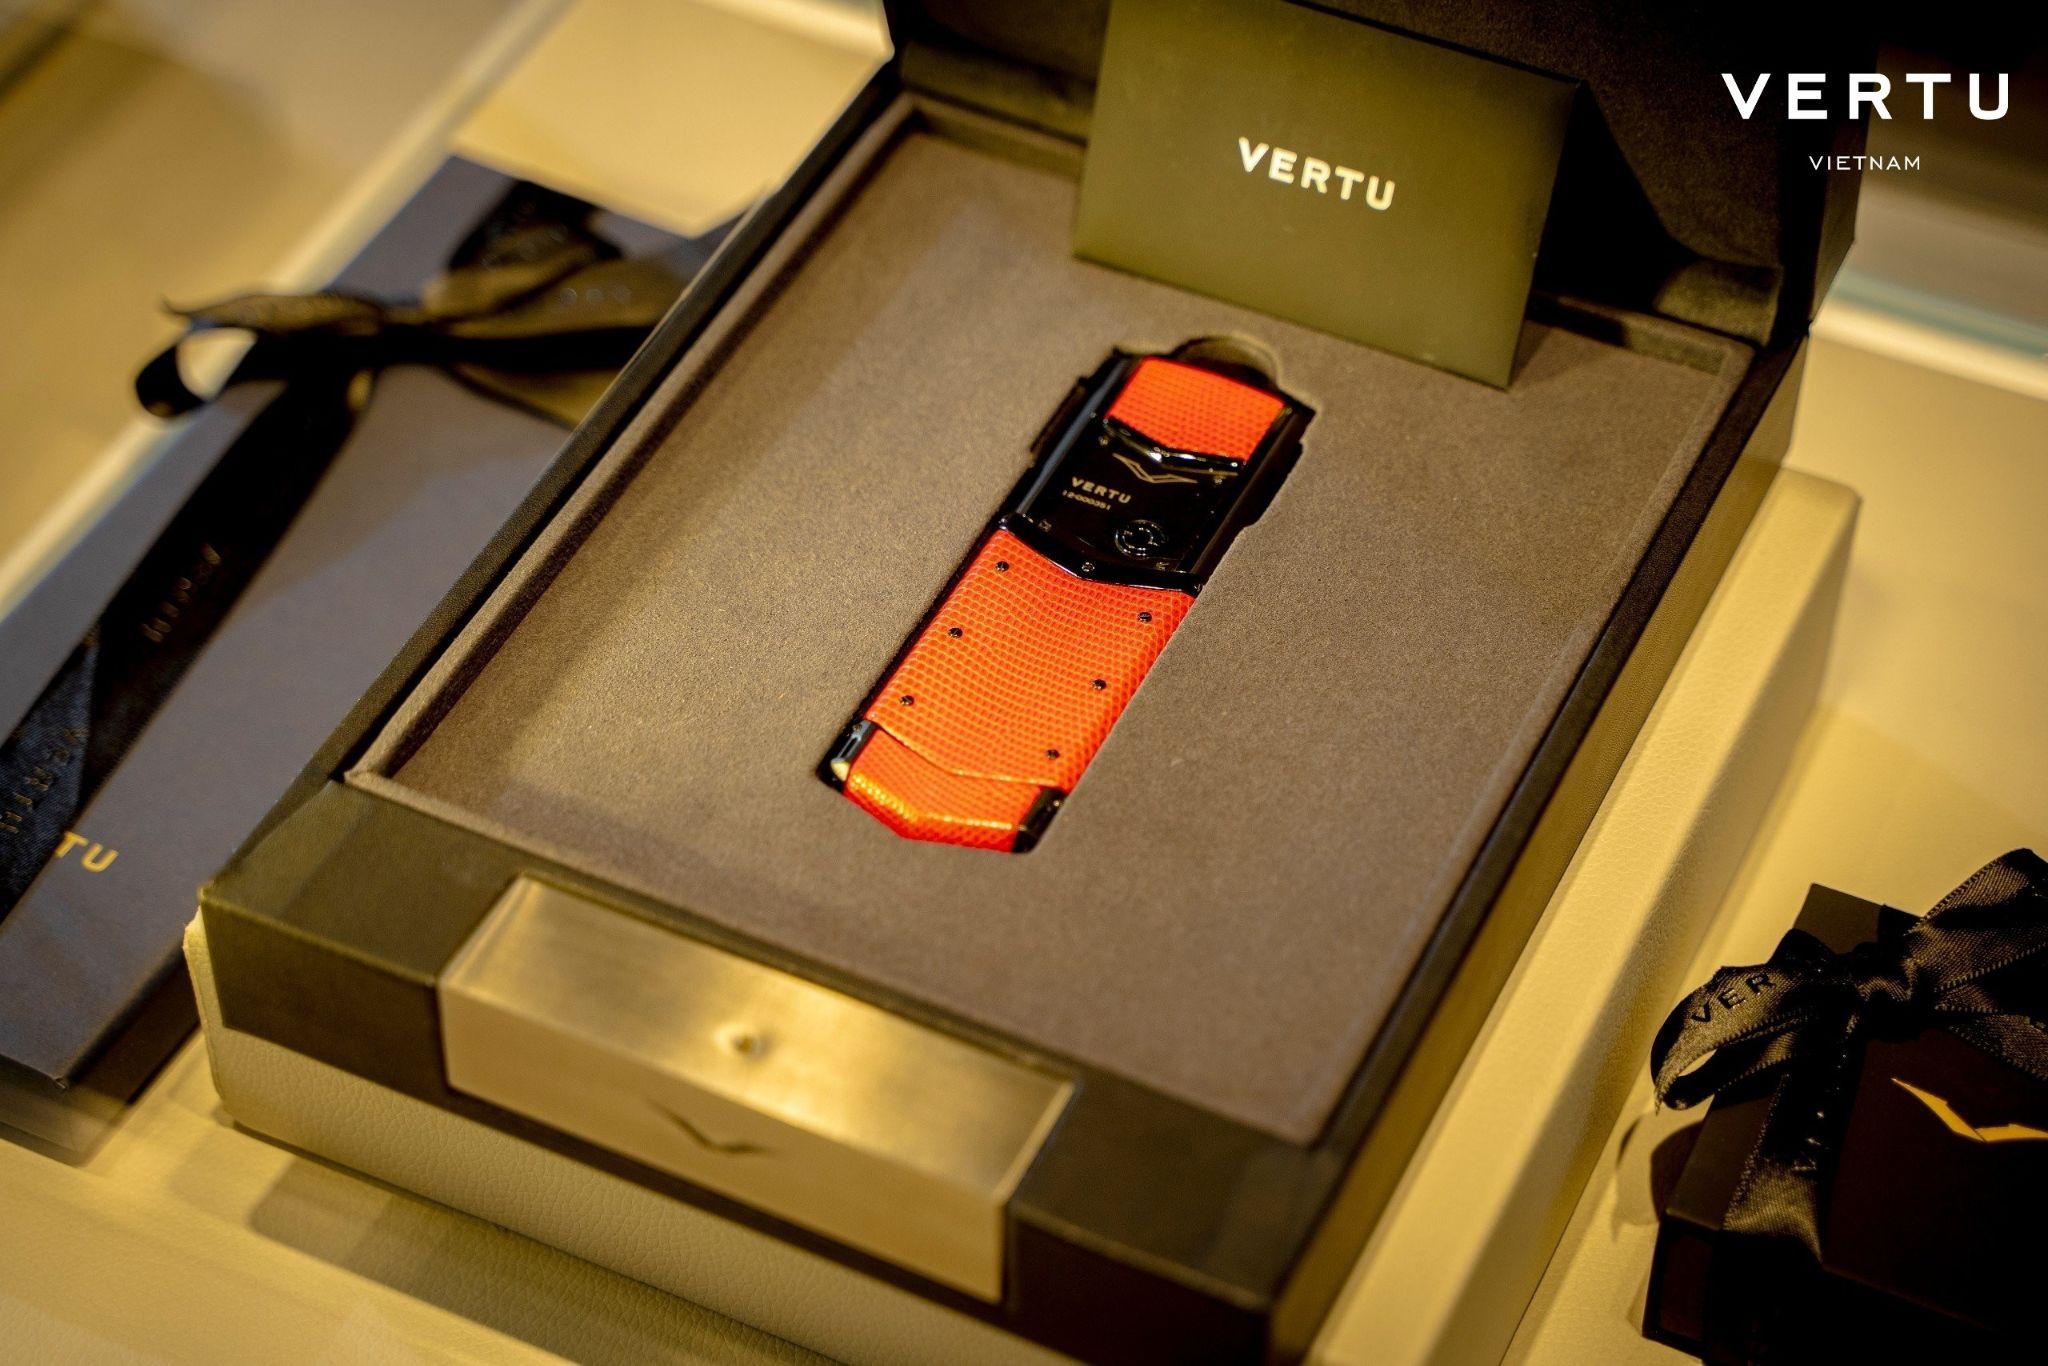 Mỗi chiếc điện thoại Vertu đều được ví như một tác phẩm nghệ thuật bởi sự công phu, tỉ mỉ của các nghệ nhân.